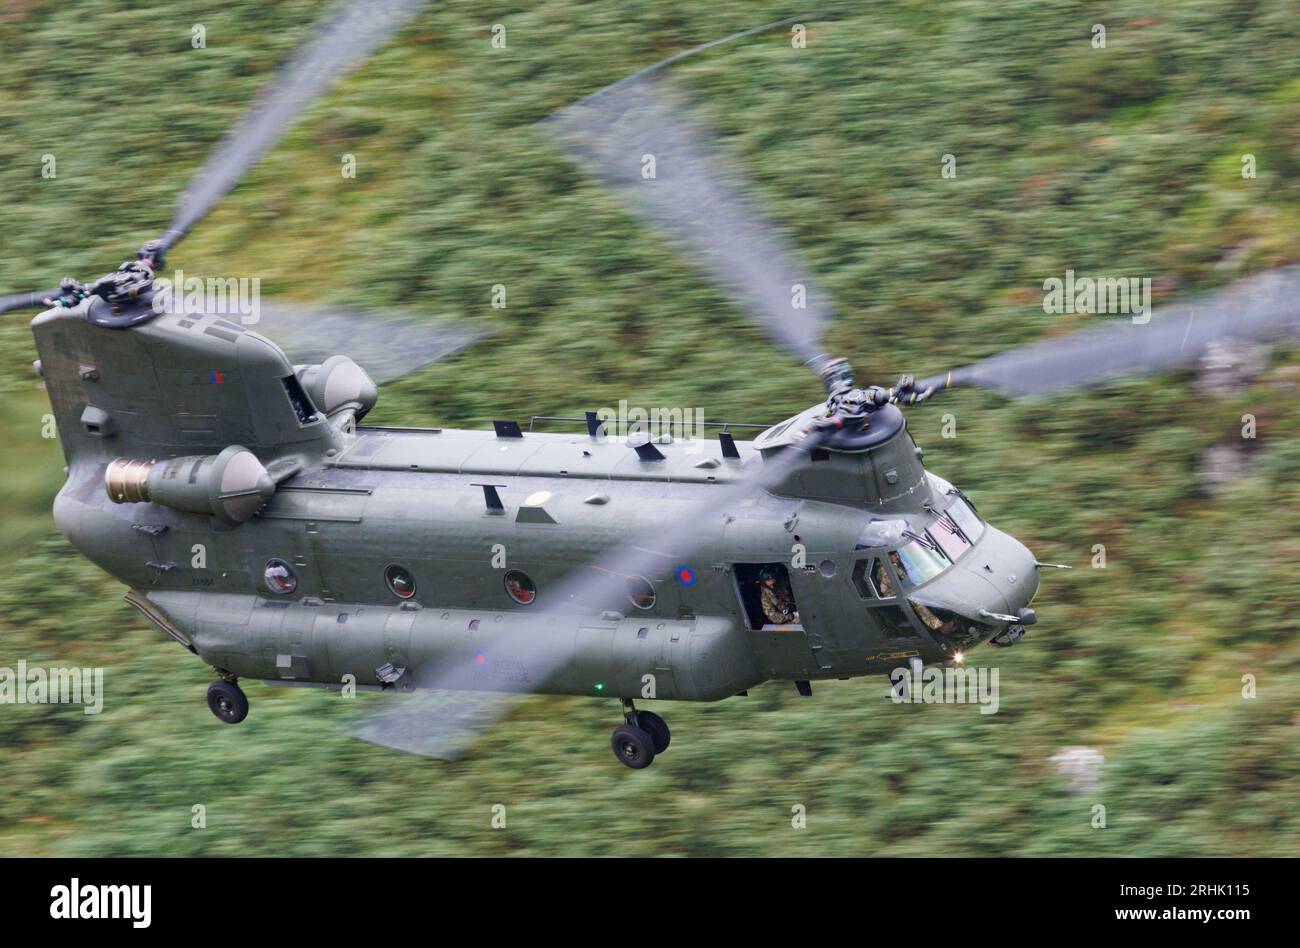 Un hélicoptère Chinook de la RAF pratiquant un vol à basse altitude dans la région de Mach Loop au pays de Galles Banque D'Images